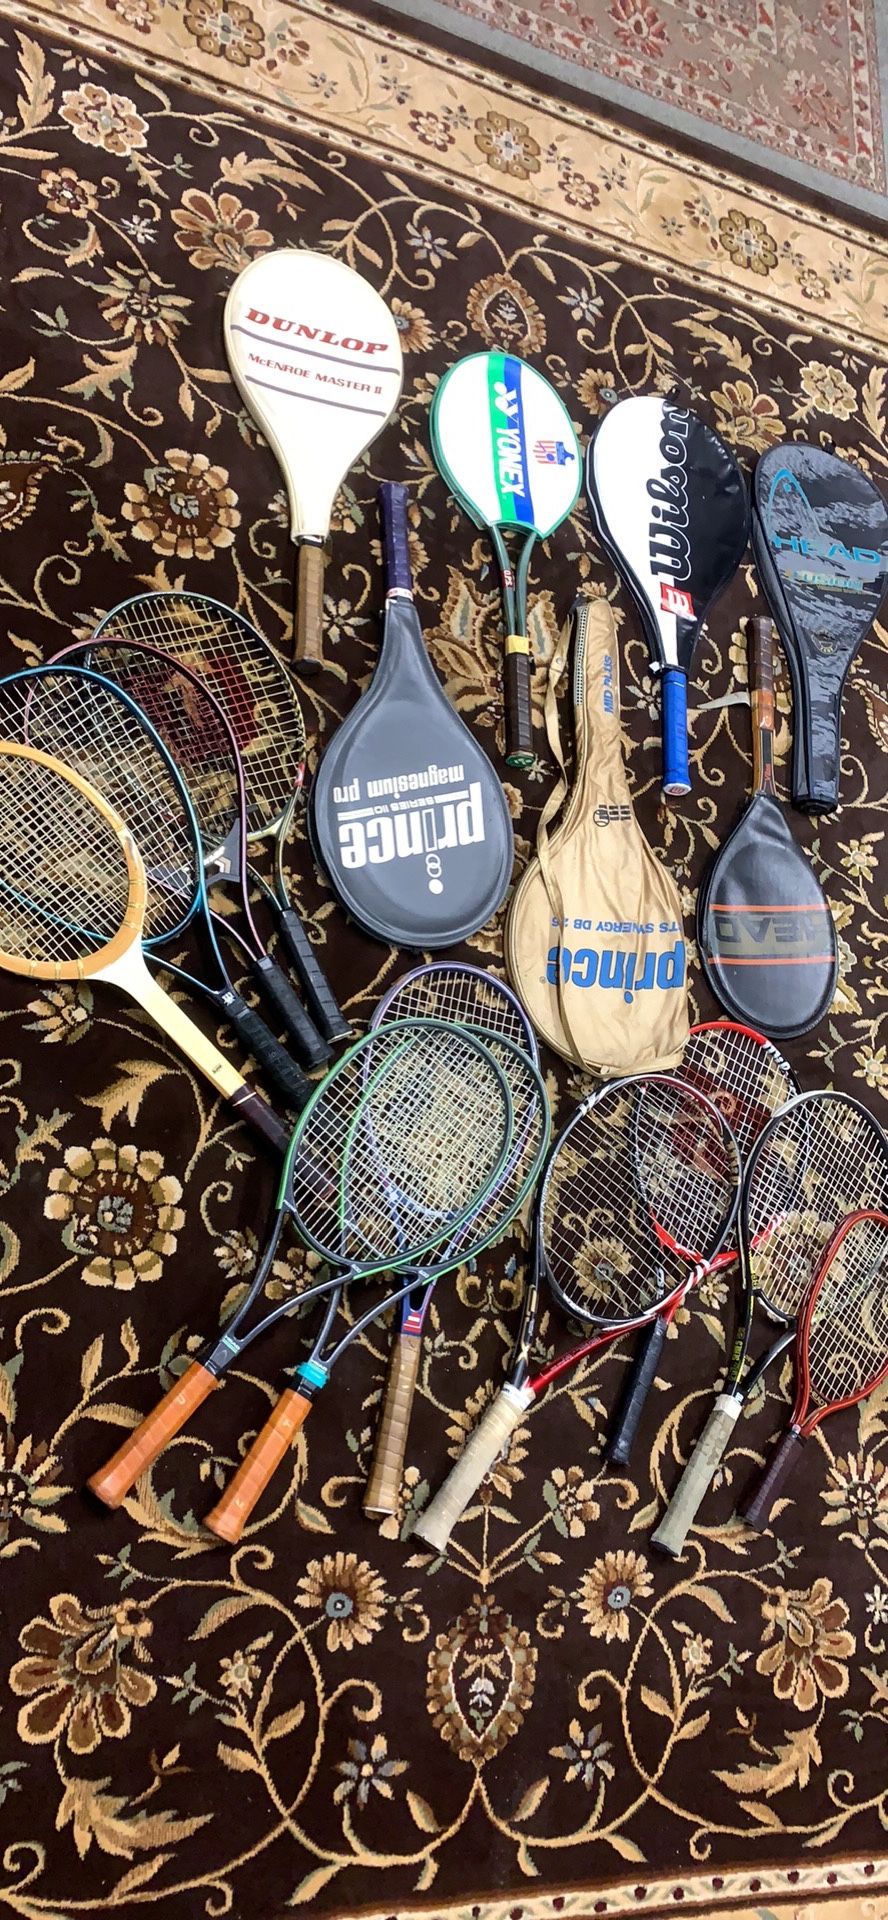 Tennis rackets $6 each or 2/10$